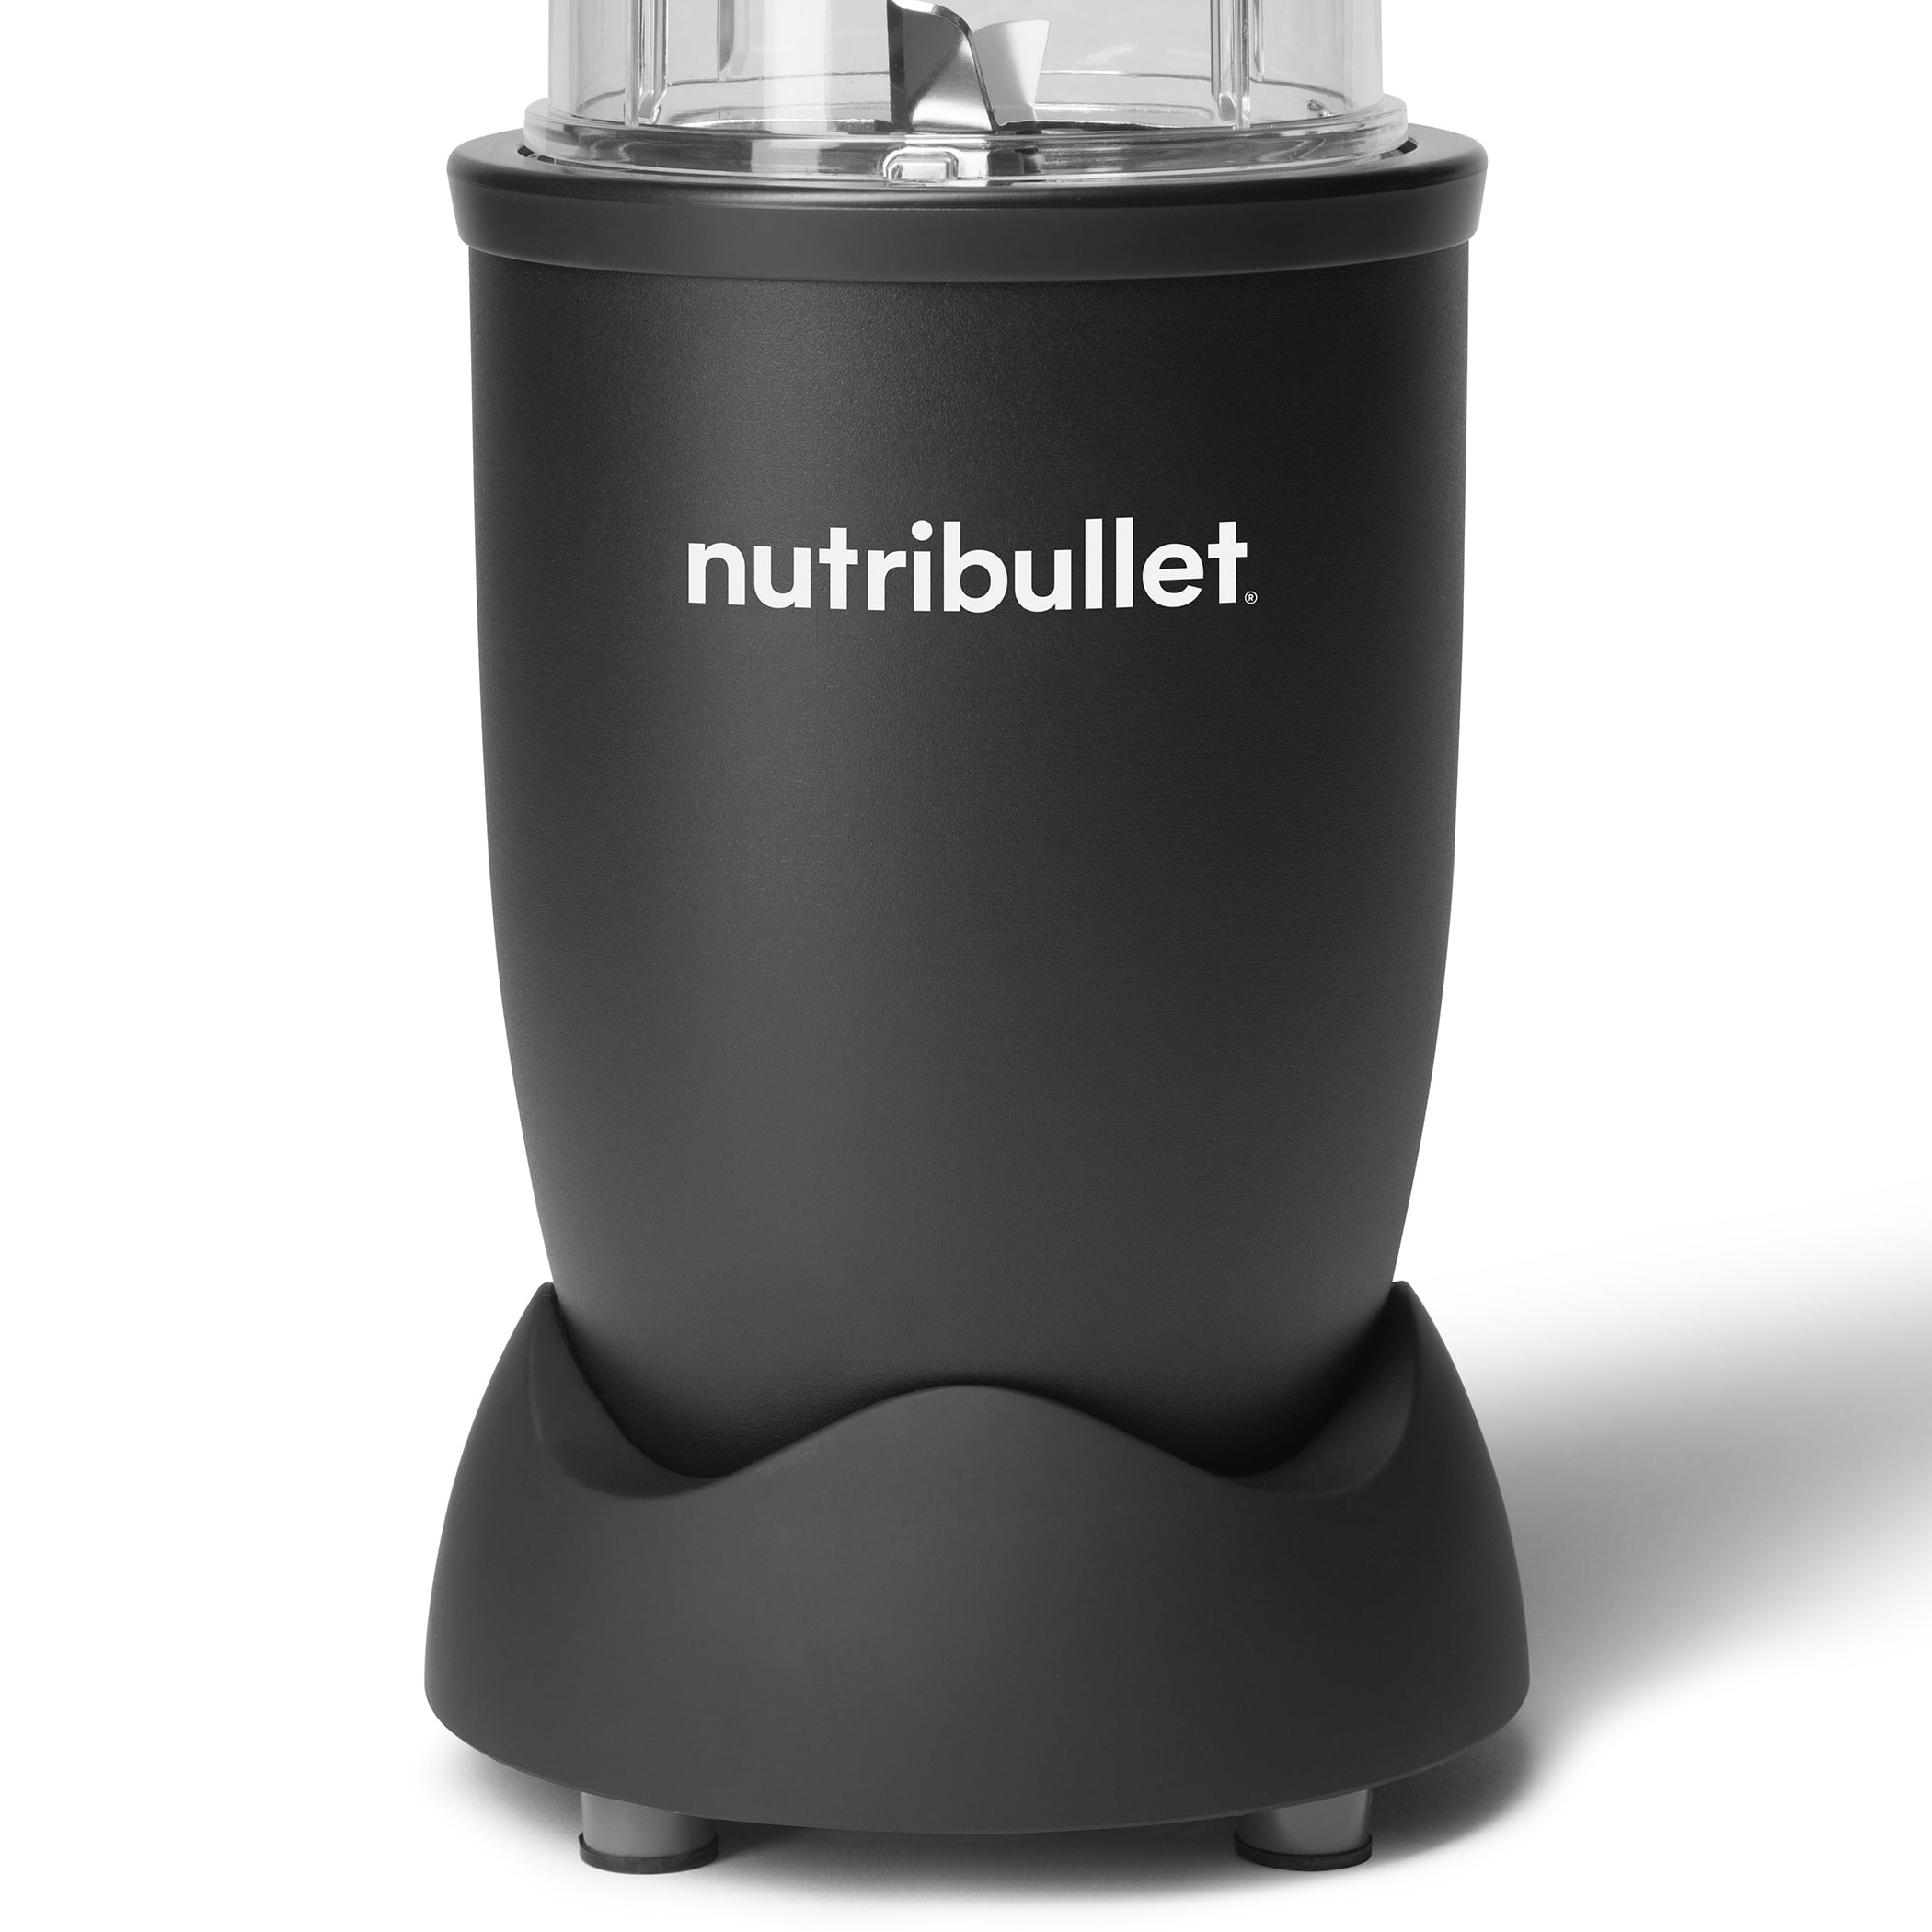 Nutribullet - Pro Blender - White